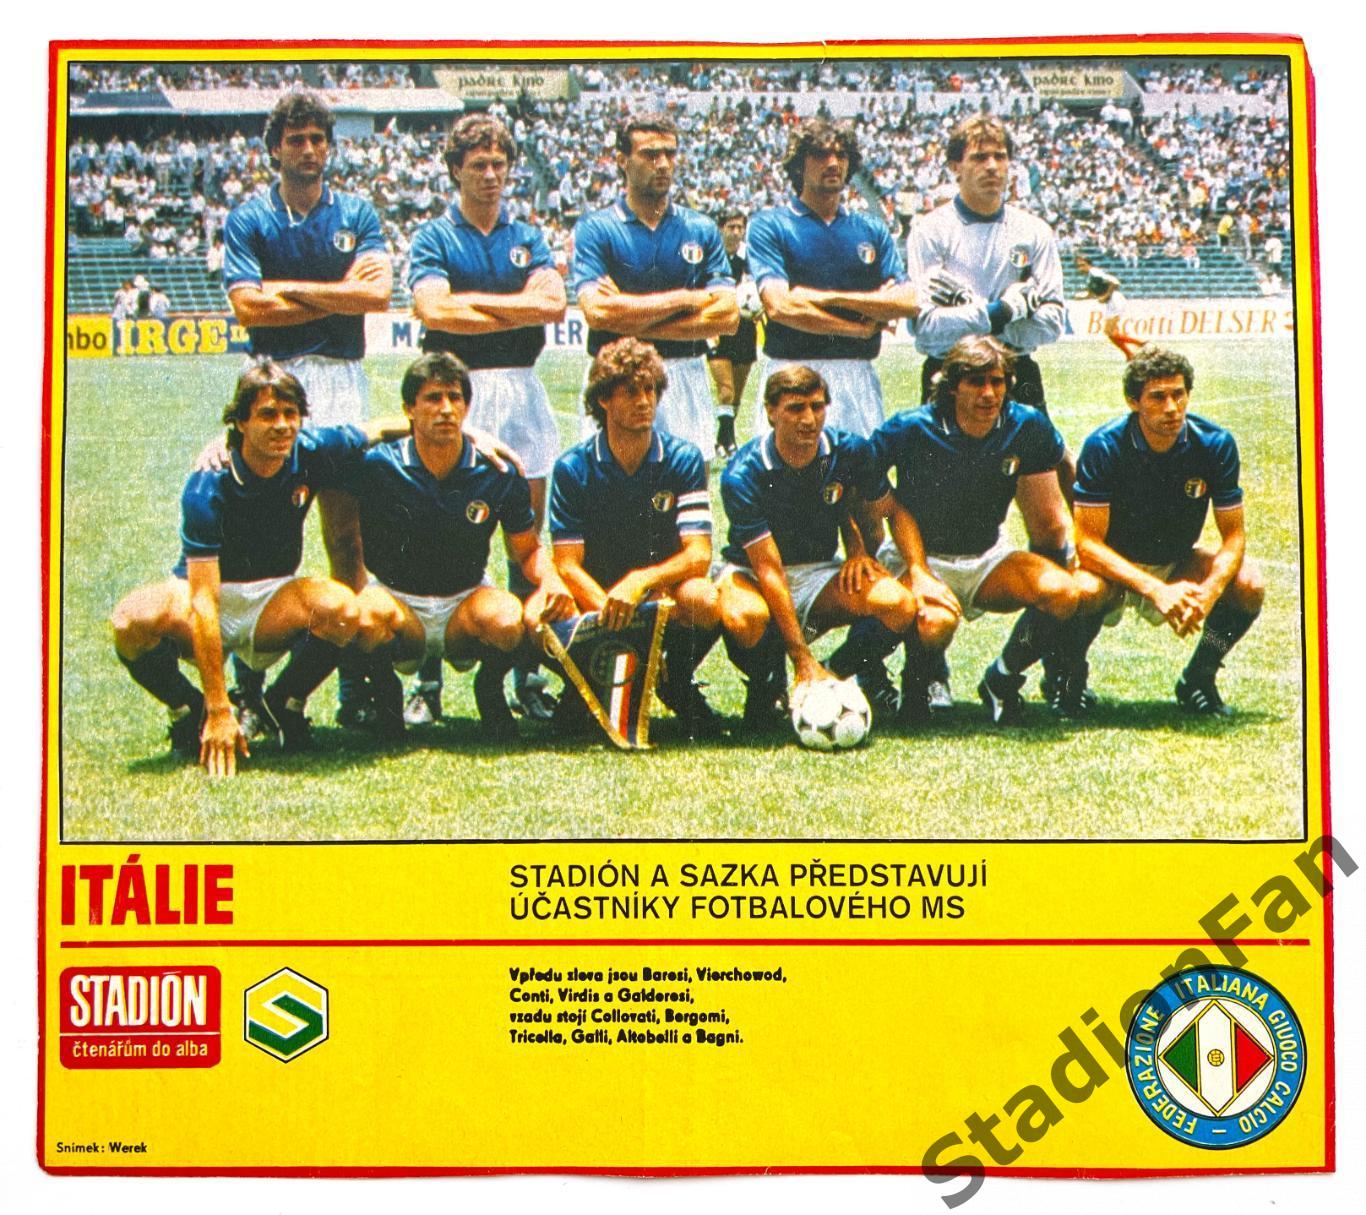 Постер из журнала Стадион (Stadion) - Italie, 1986